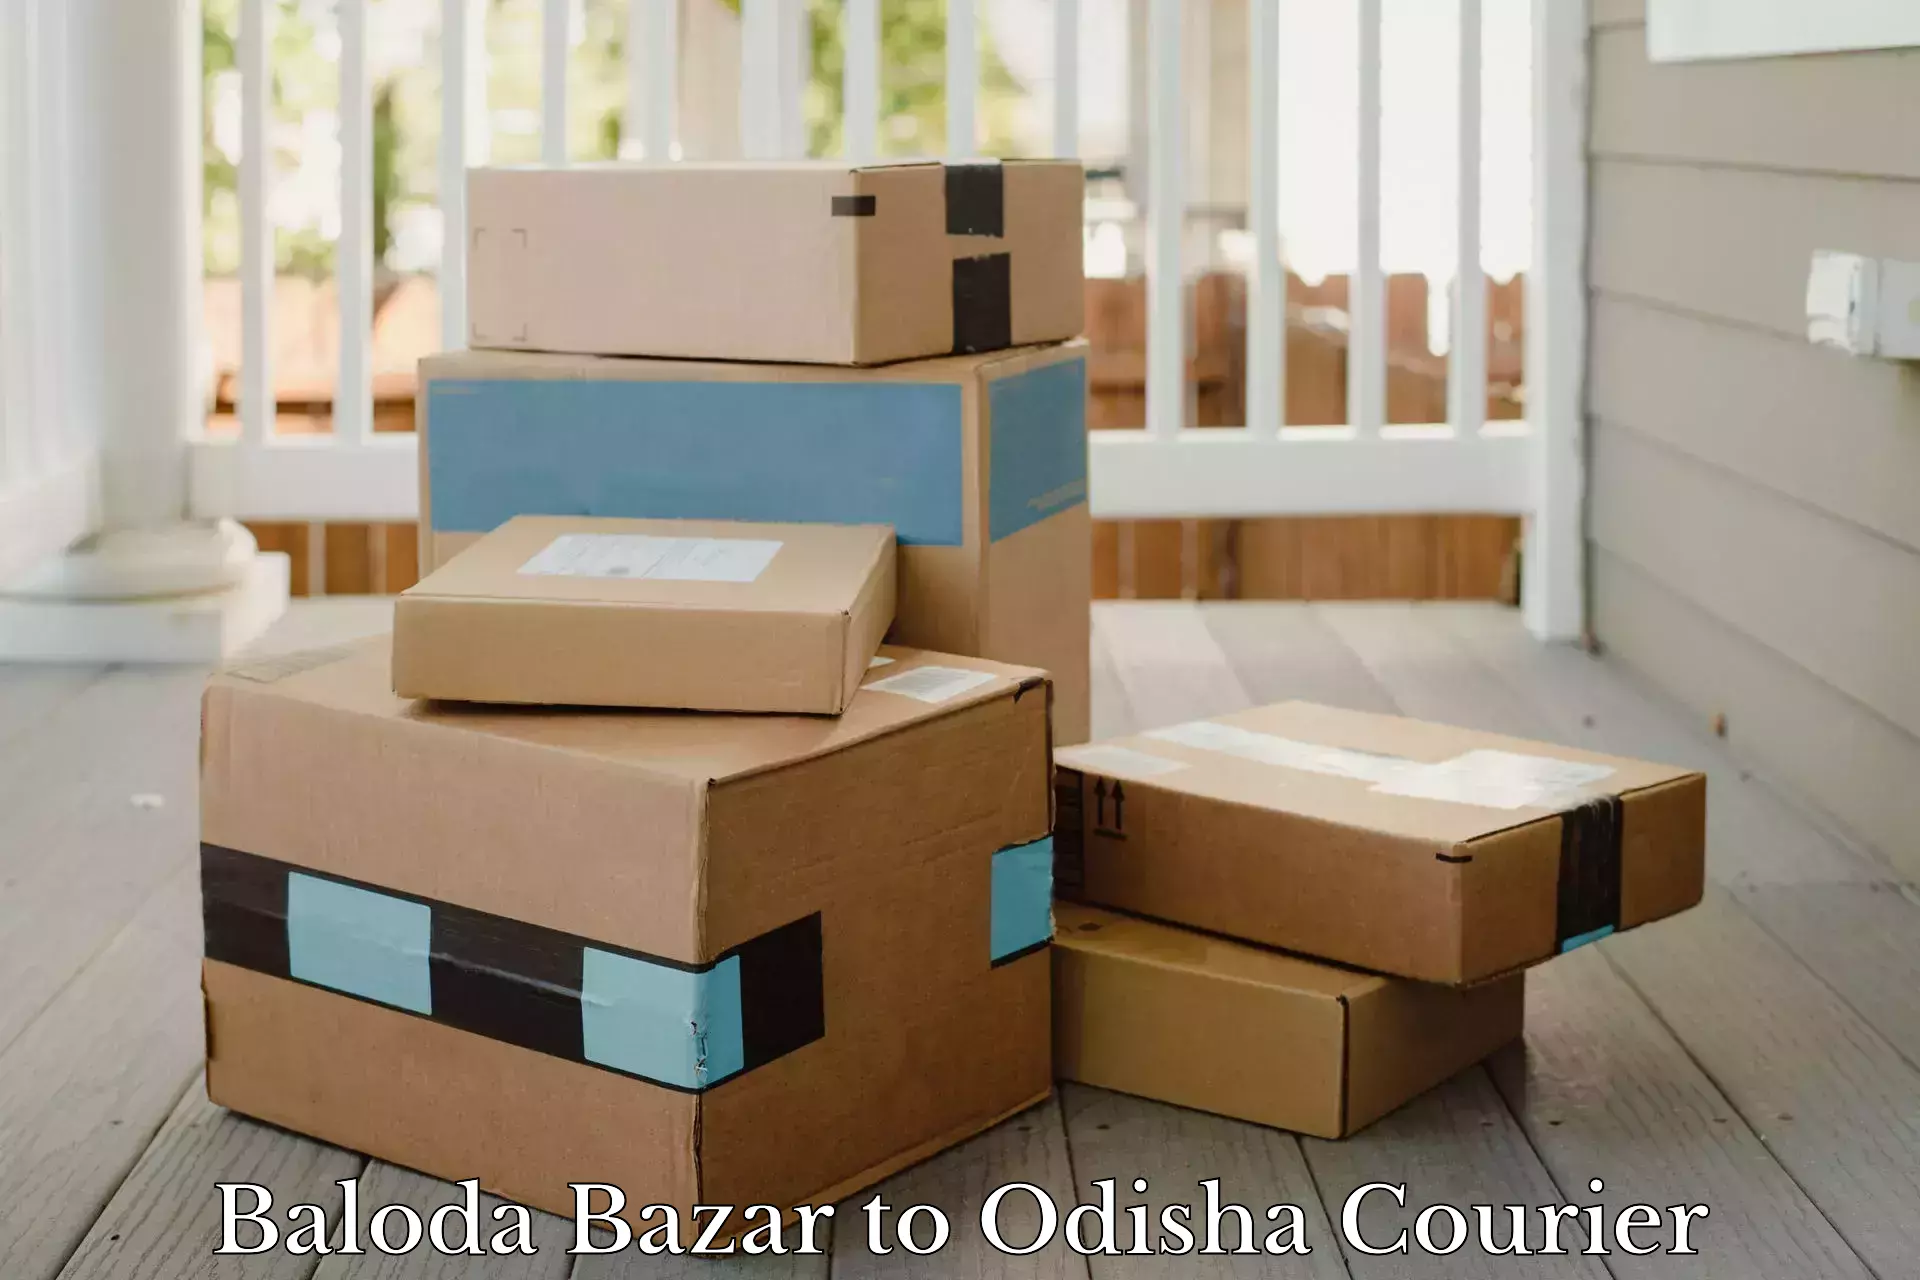 Reliable courier service Baloda Bazar to Konark